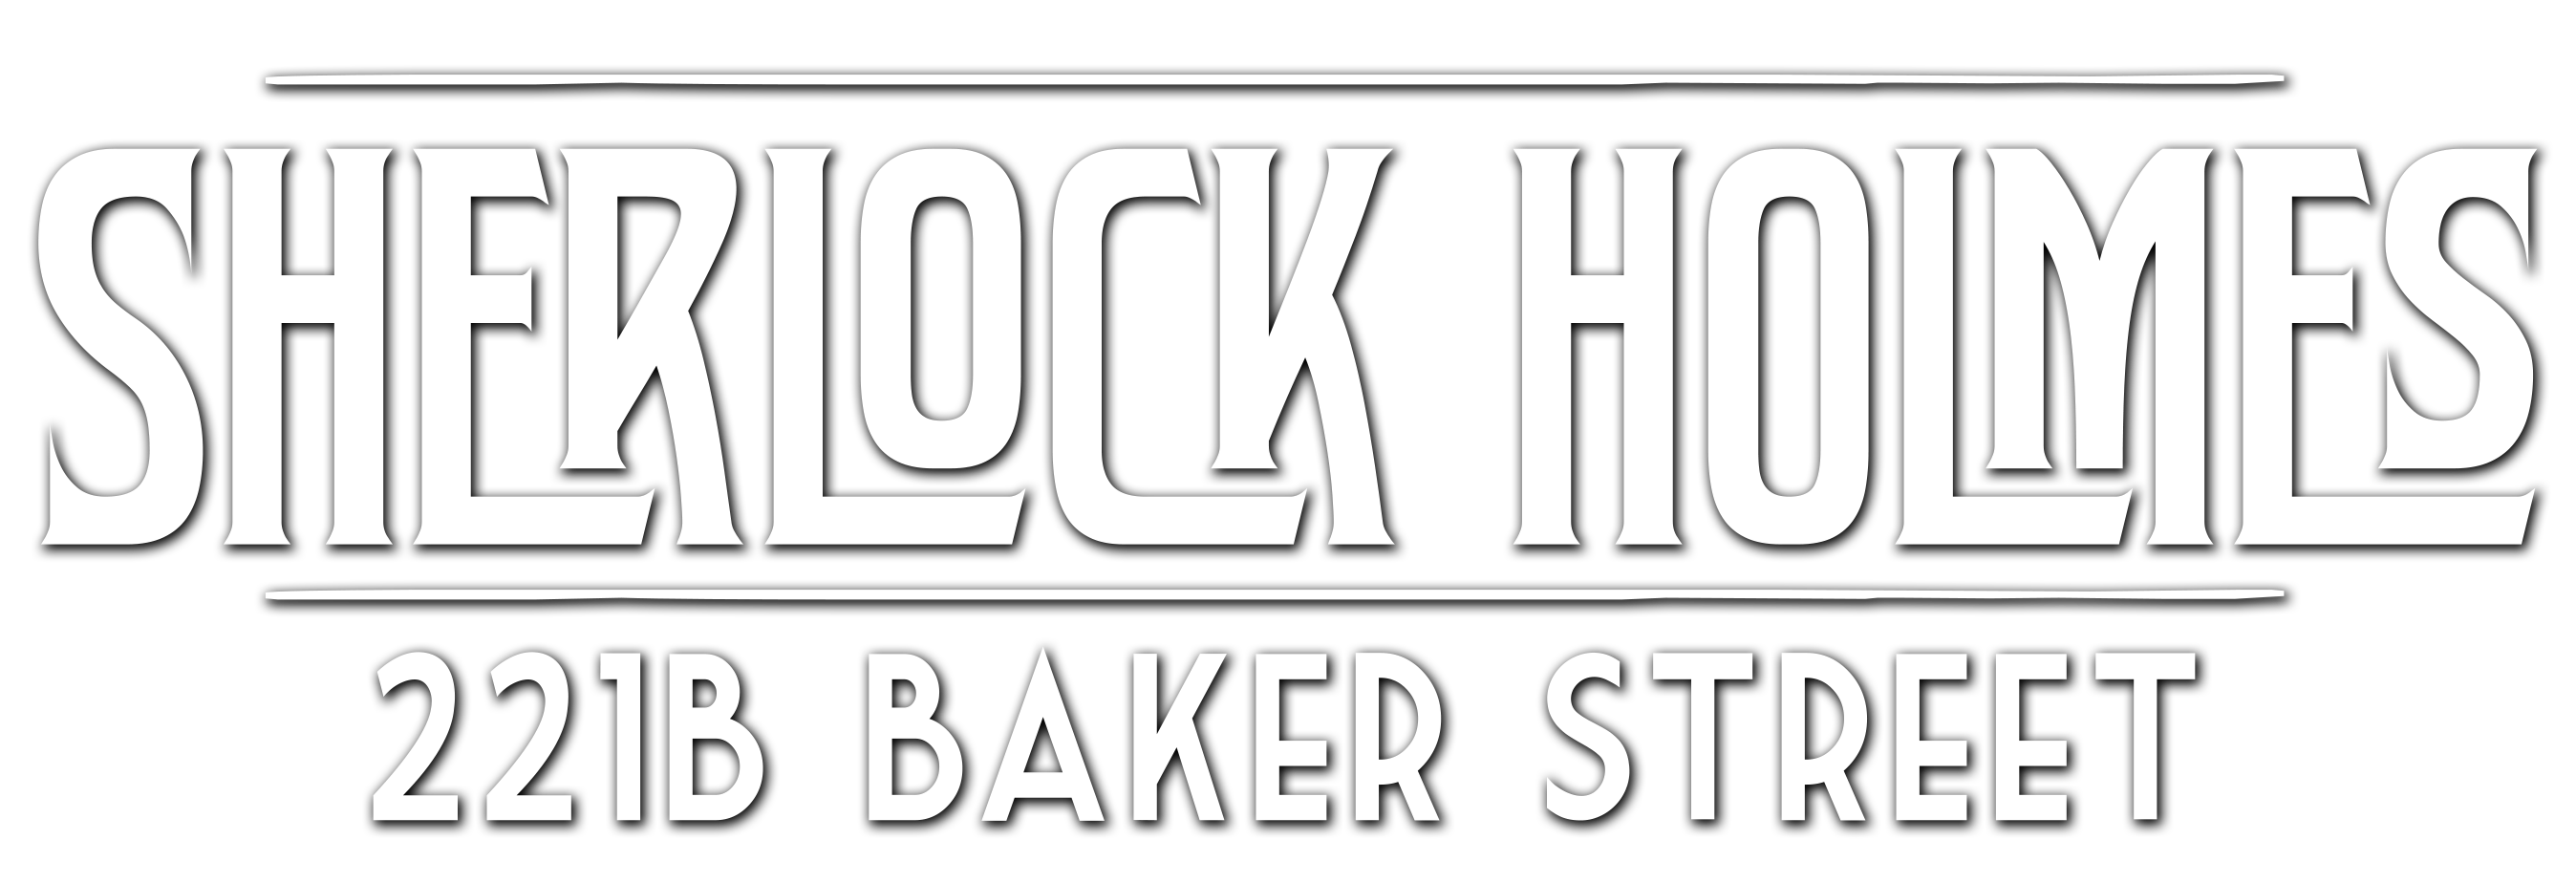 Sherlock Holmes - 221B Baker Street